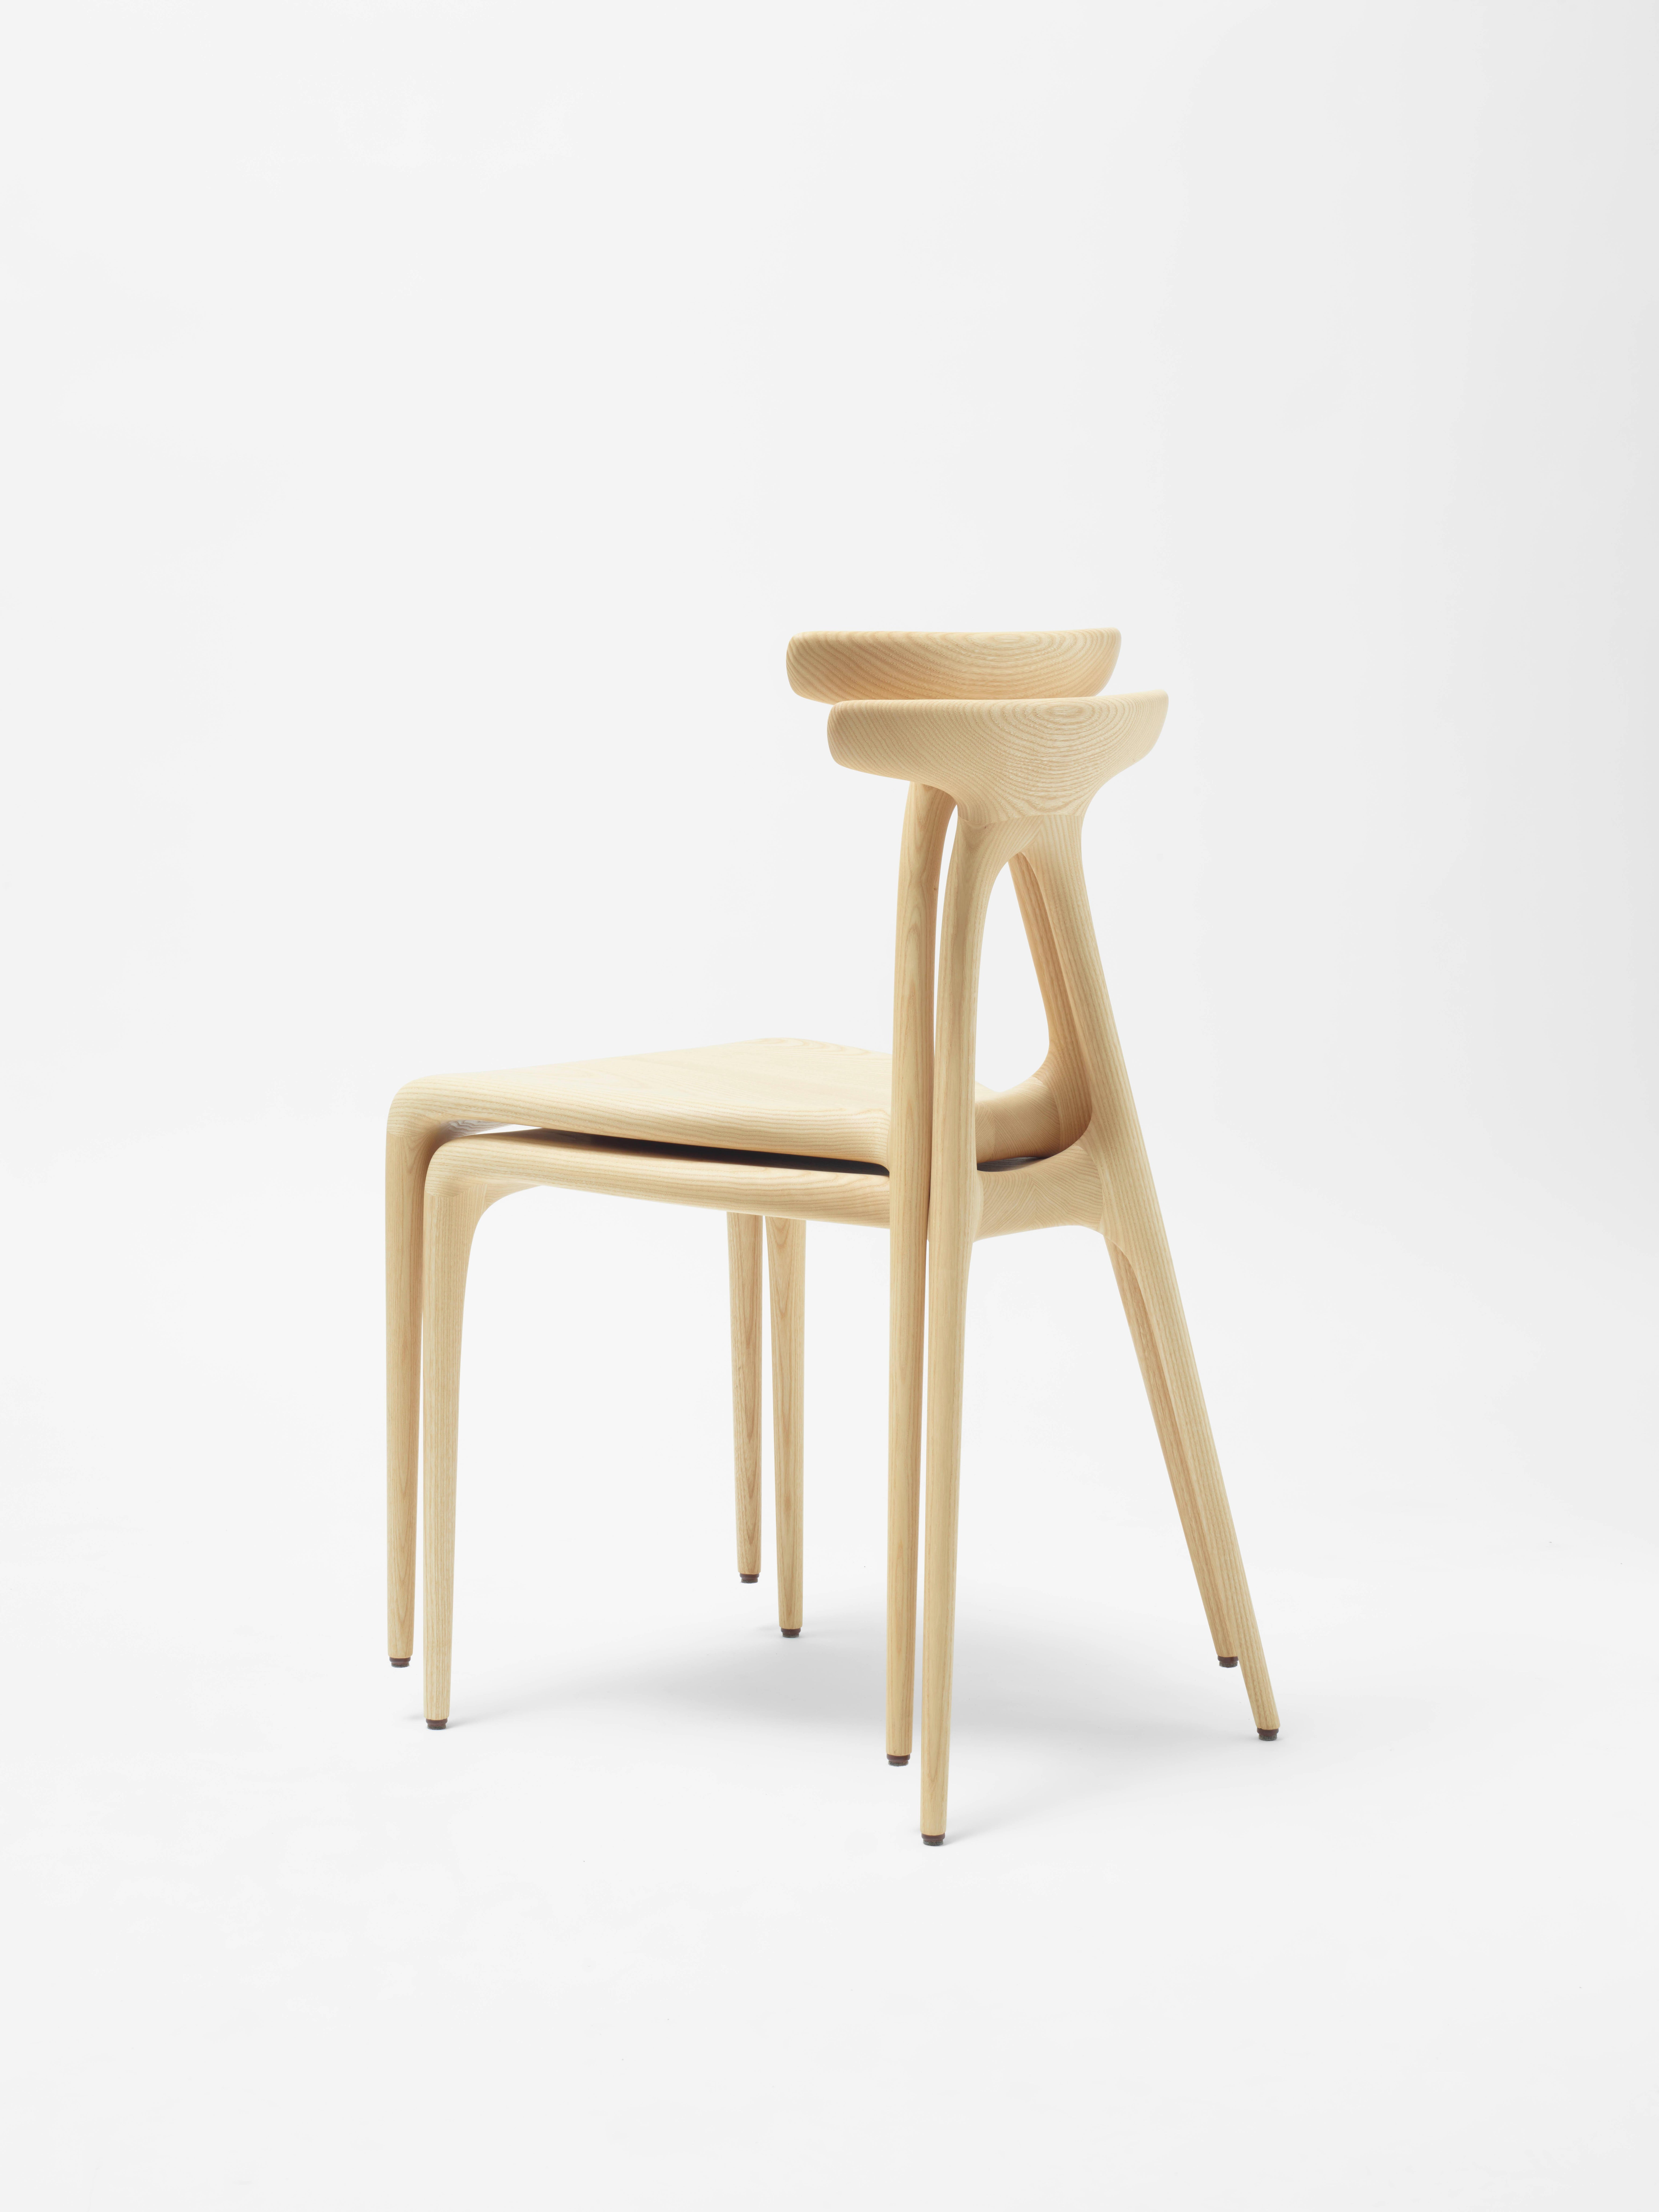 Une chaise empilable contemporaine en bois massif à usages multiples, produite à l'aide des dernières technologies de production de meubles en bois façonné. Le design présente un geste architectural fort qui confère à la chaise sa force inhérente :